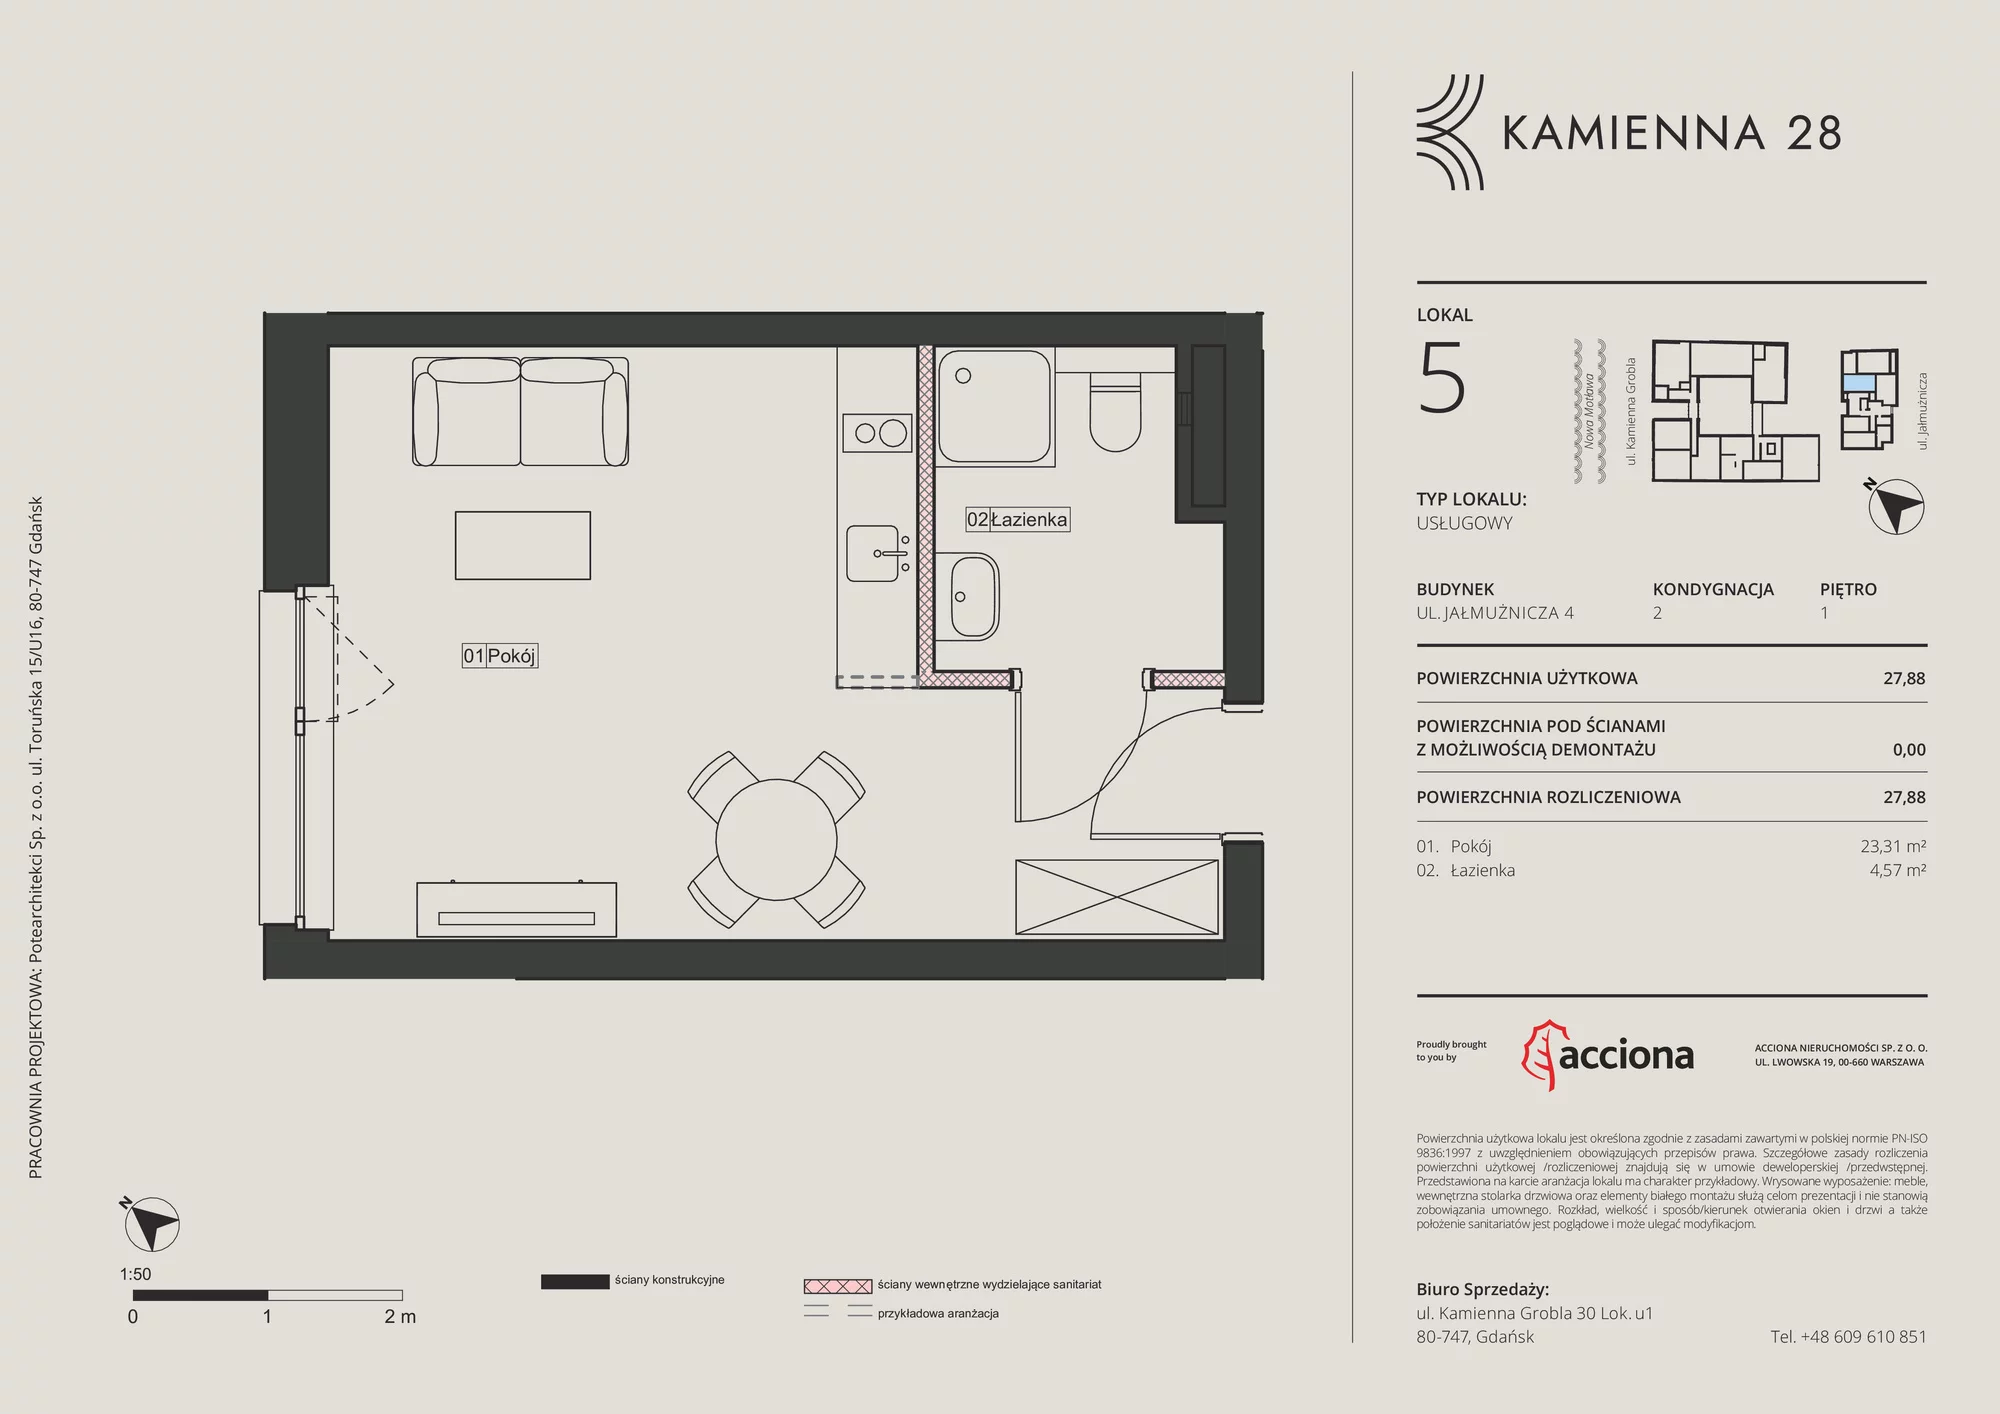 Apartament inwestycyjny 27,88 m², piętro 1, oferta nr 4.5, Kamienna 28 - apartamenty inwestycyjne, Gdańsk, Śródmieście, Dolne Miasto, ul. Jałmużnicza 4